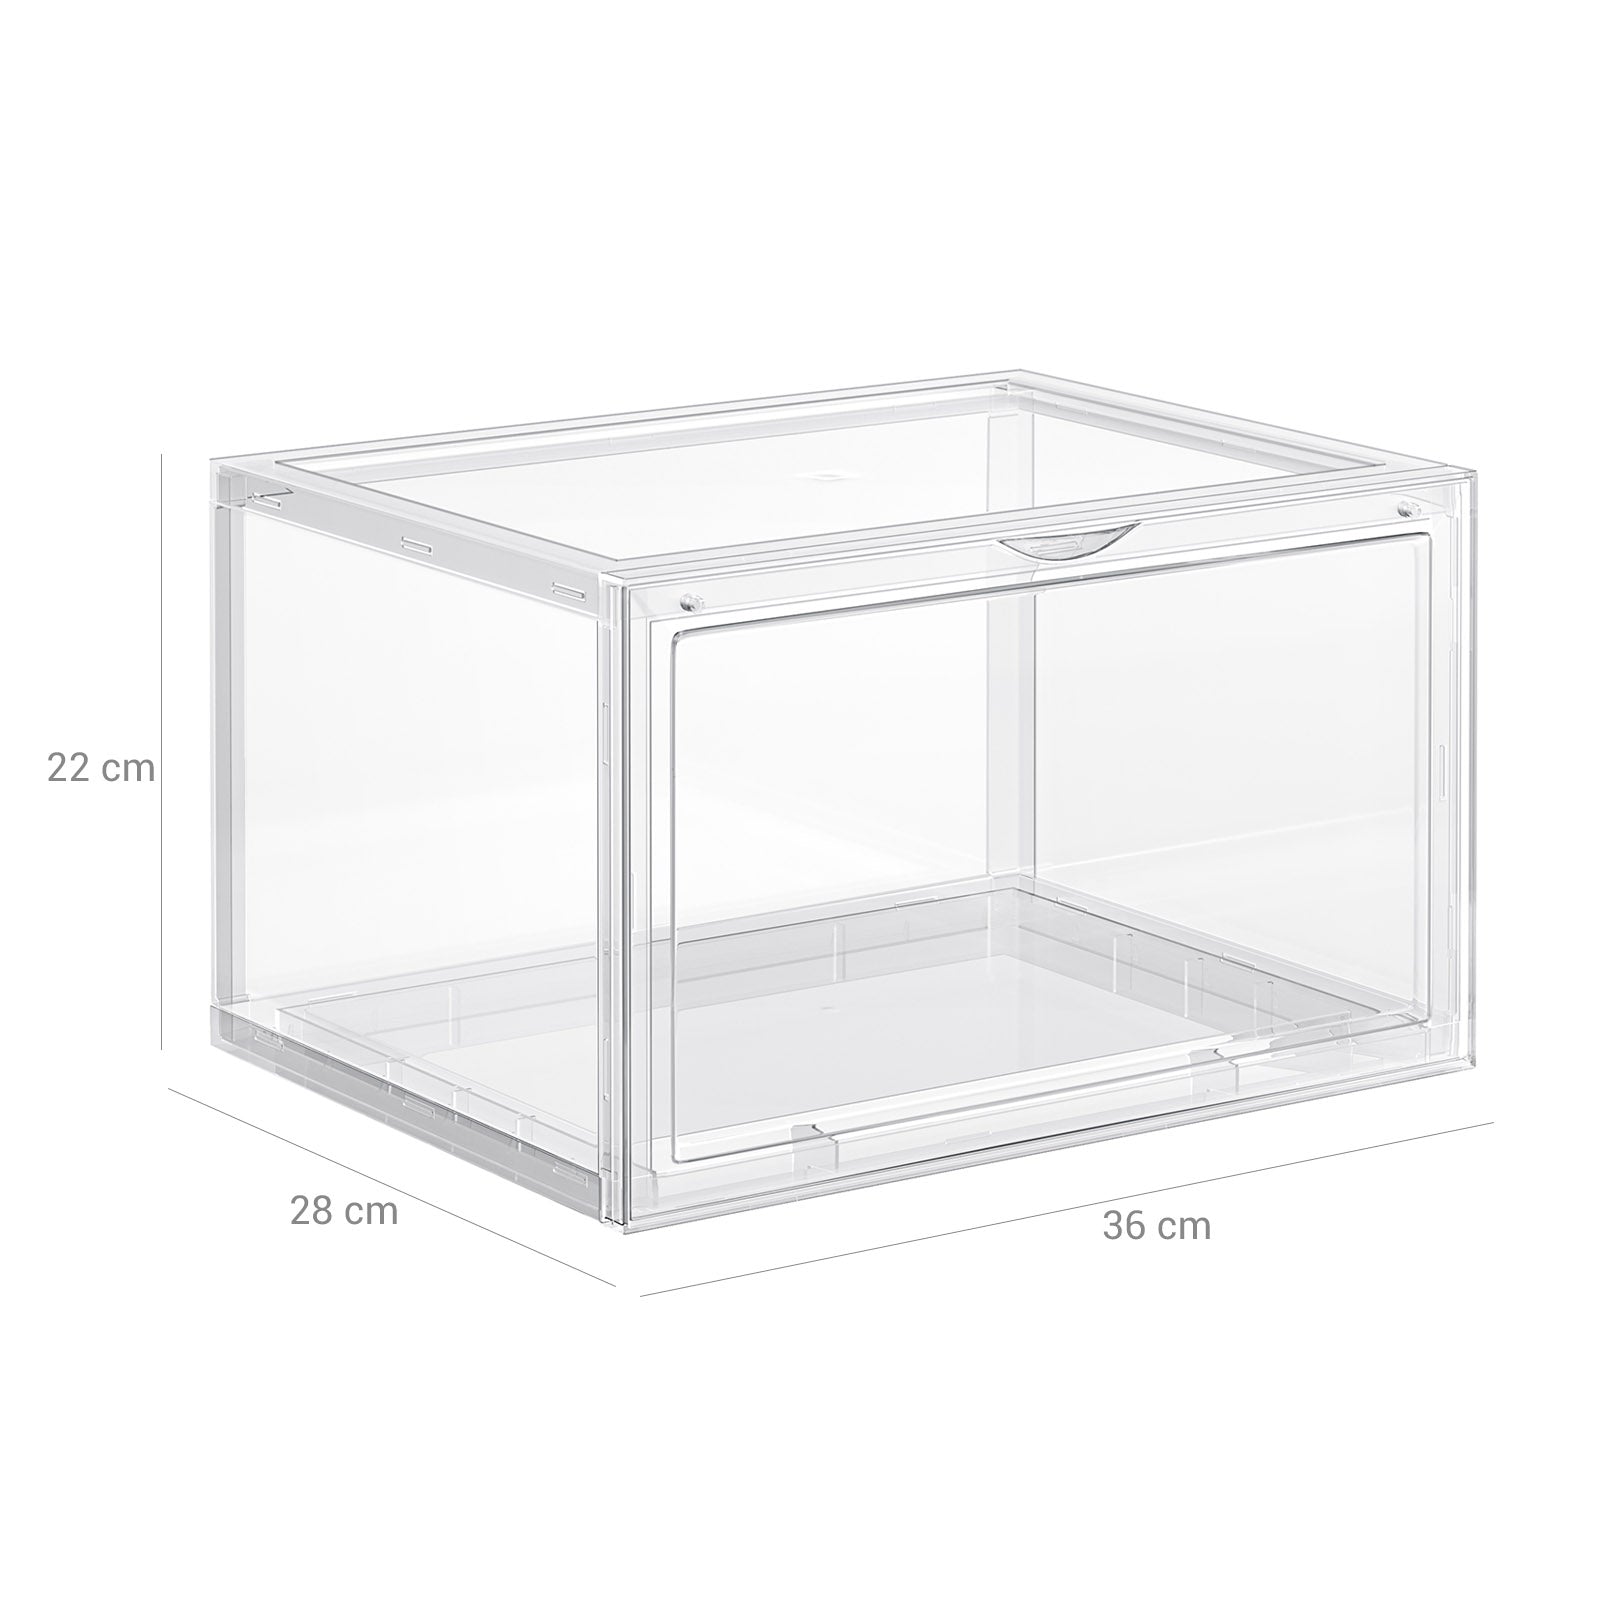 3er-Set Schuhbox Schuhorganizer 36 x 28 x 22 cm Weiß-Transparent